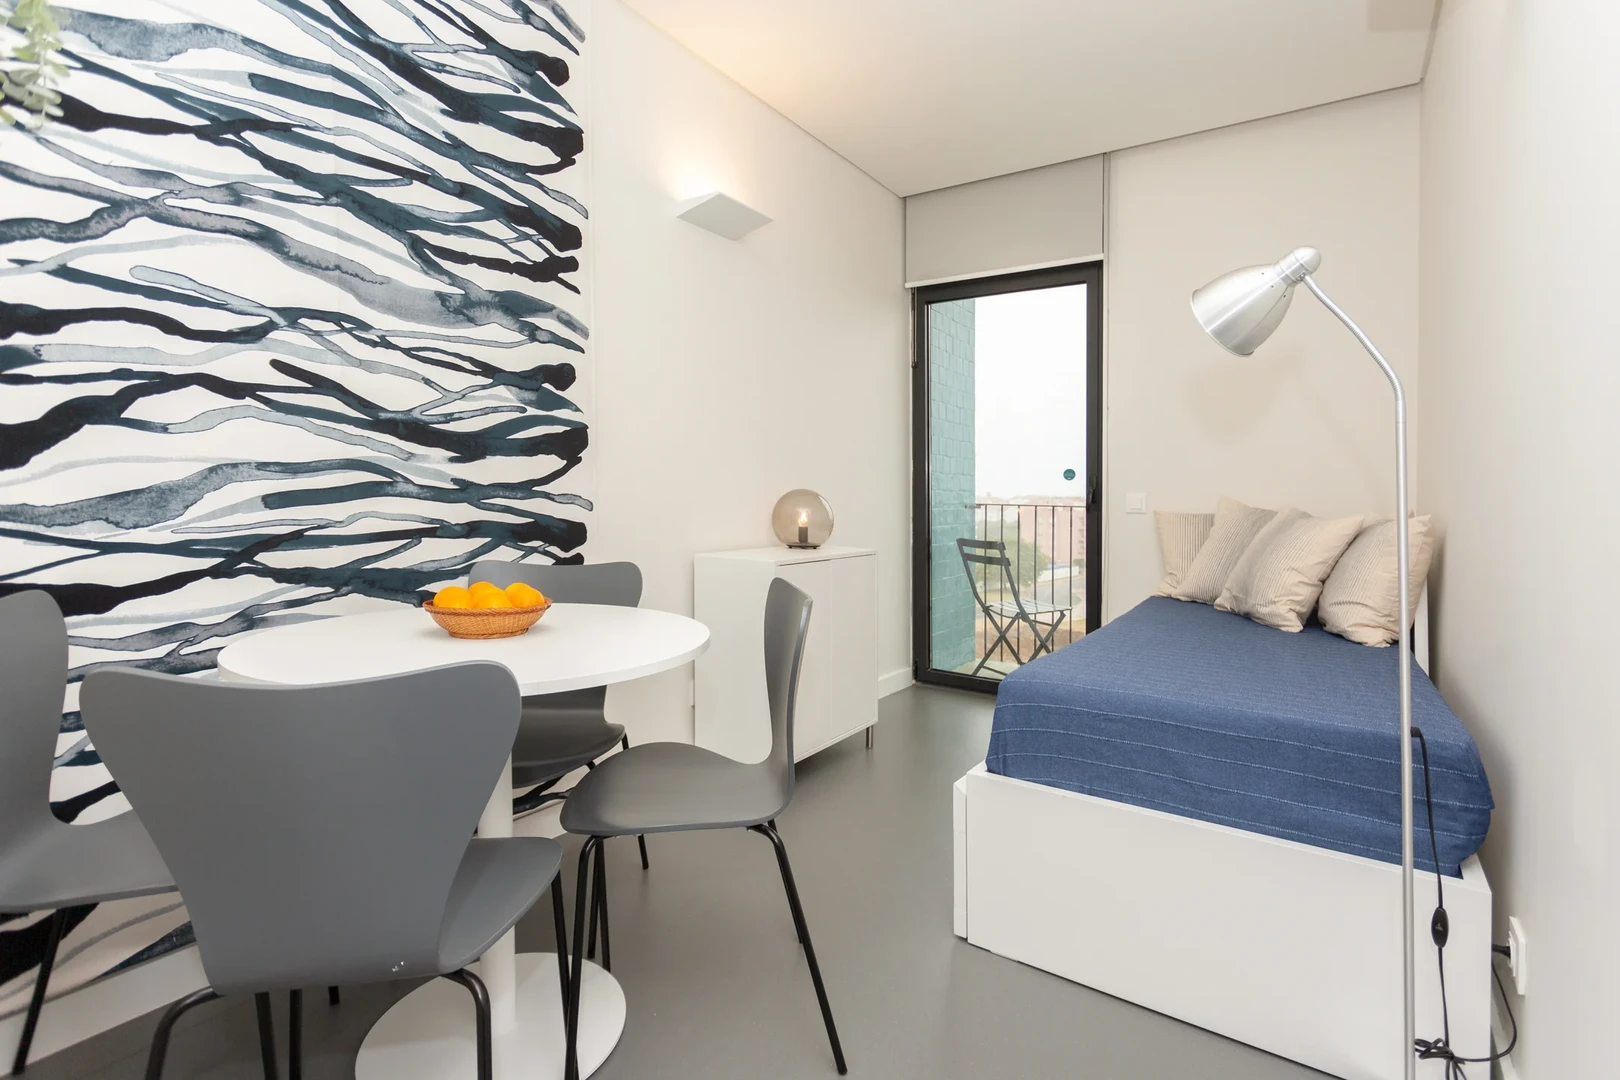 Great studio apartment in Estoril